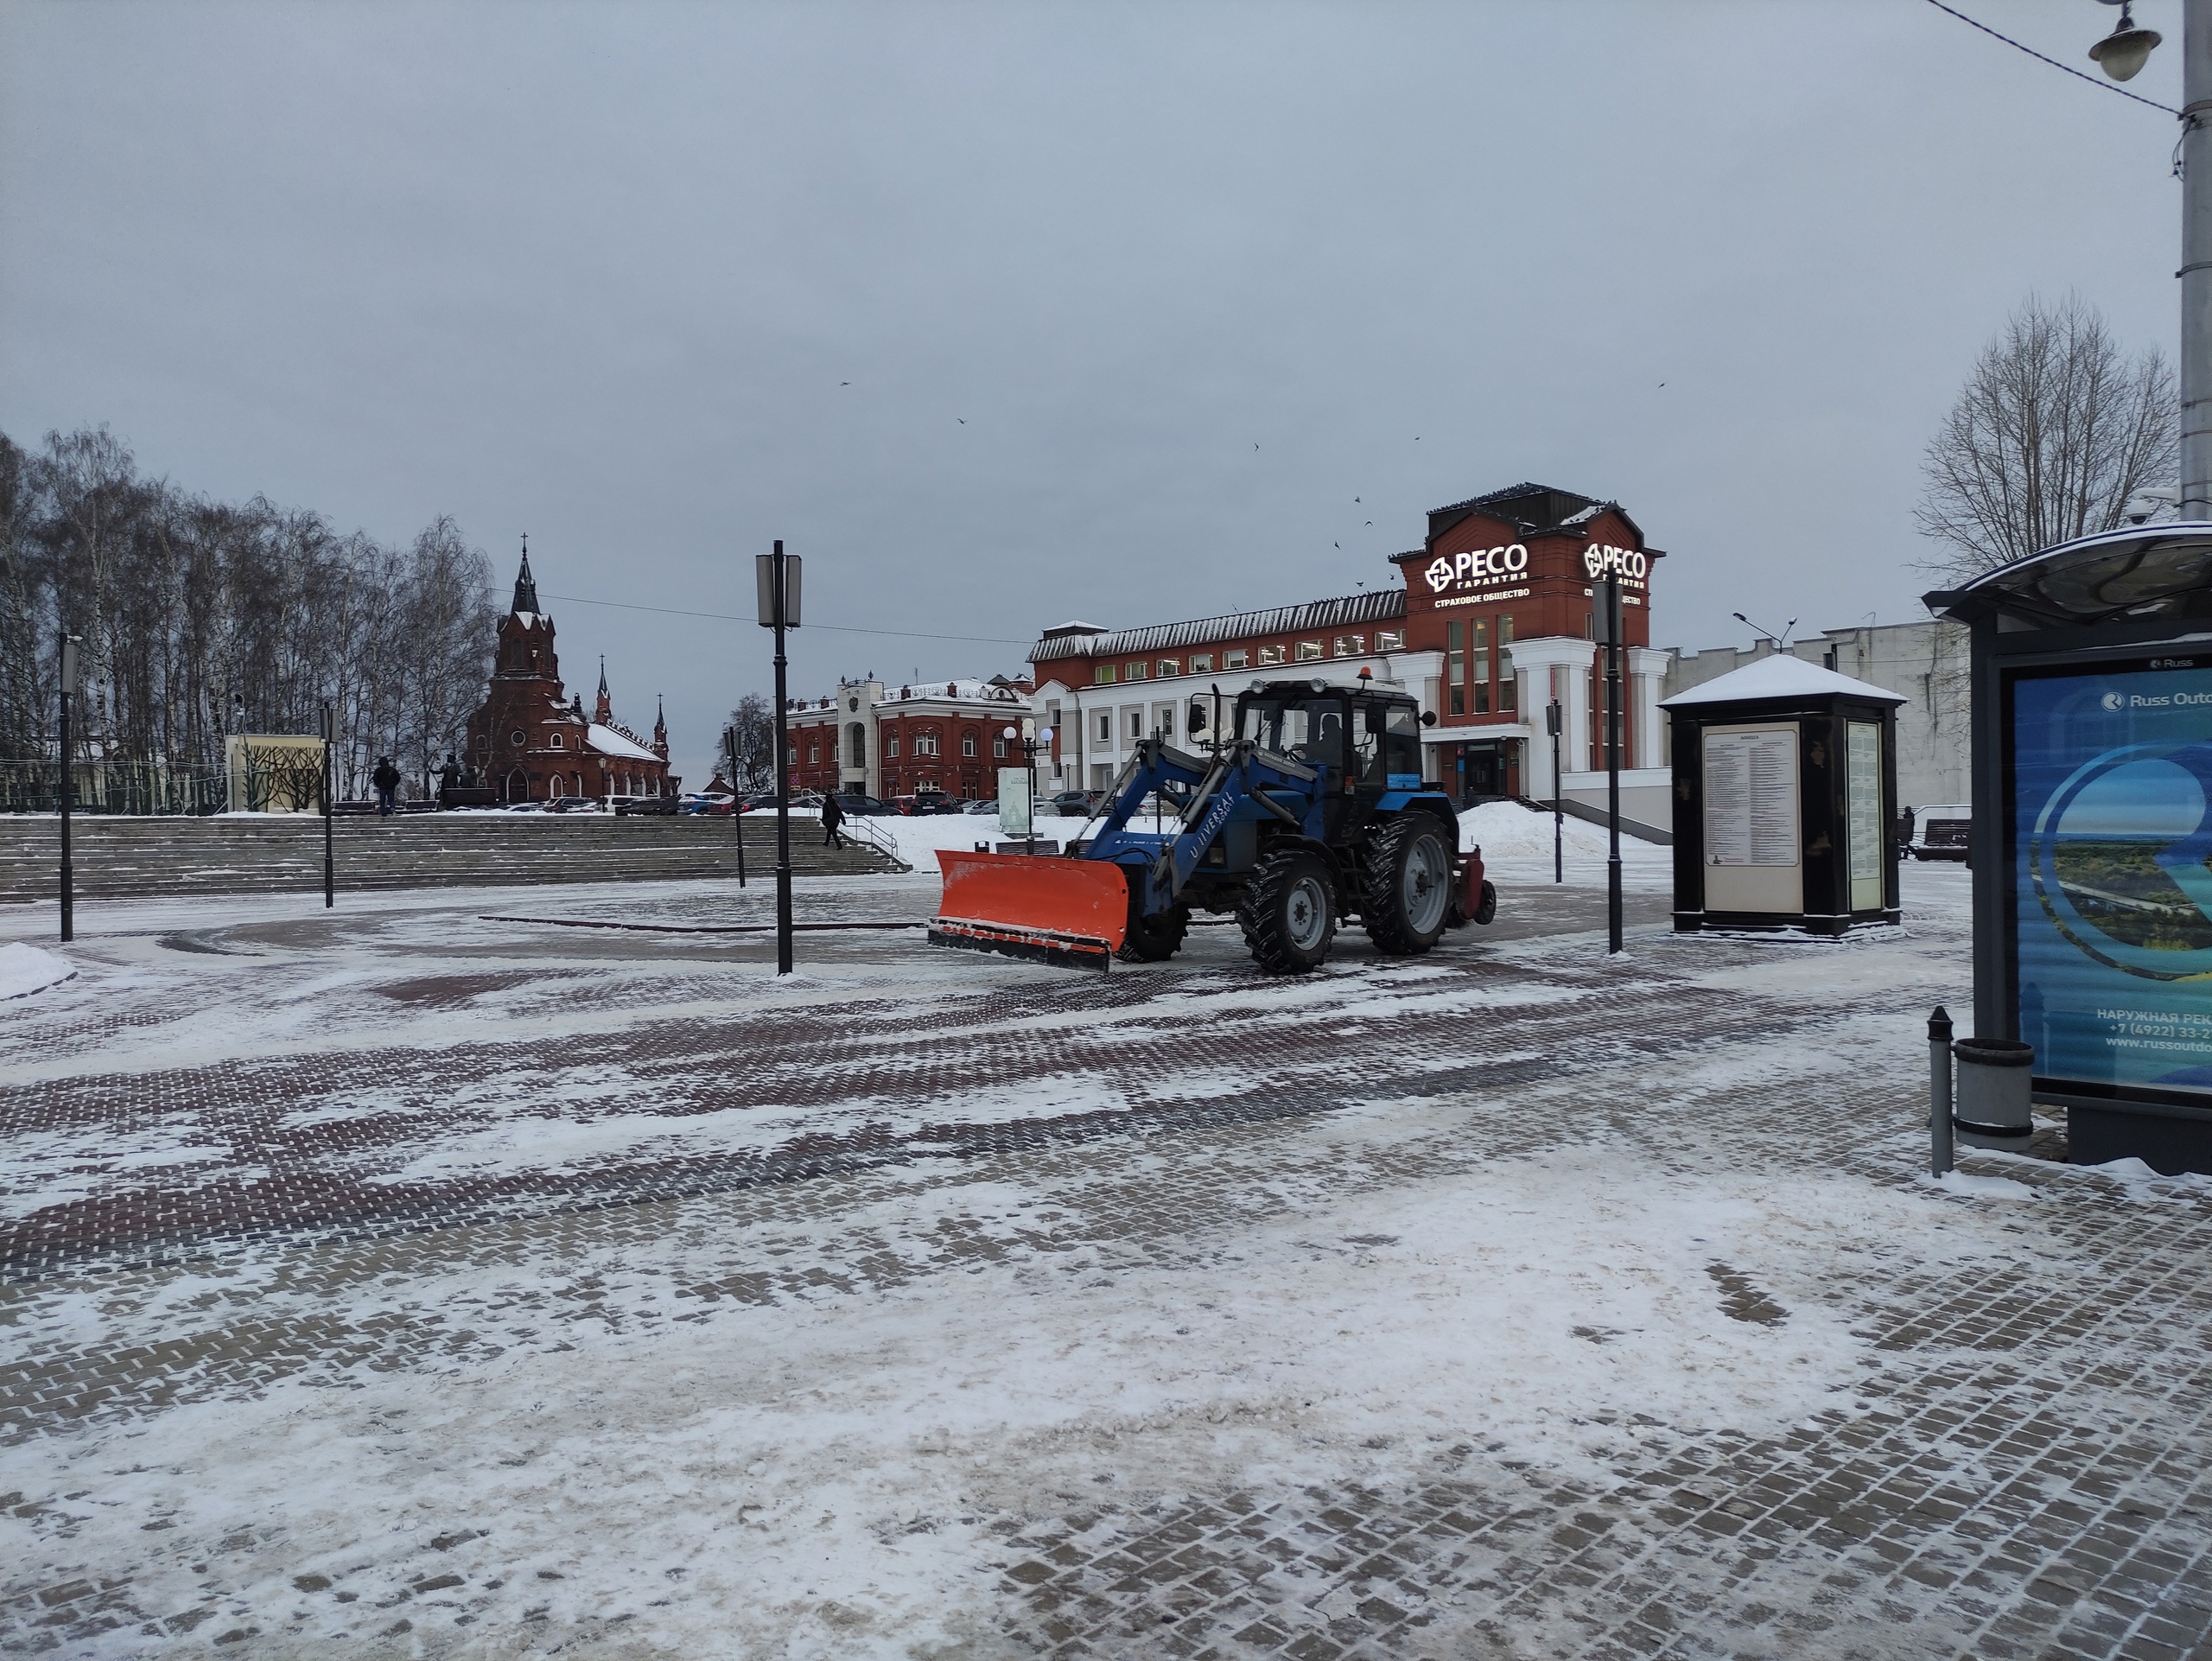  владимирцы рассказали о своих впечатлениях после уборки снега в городе